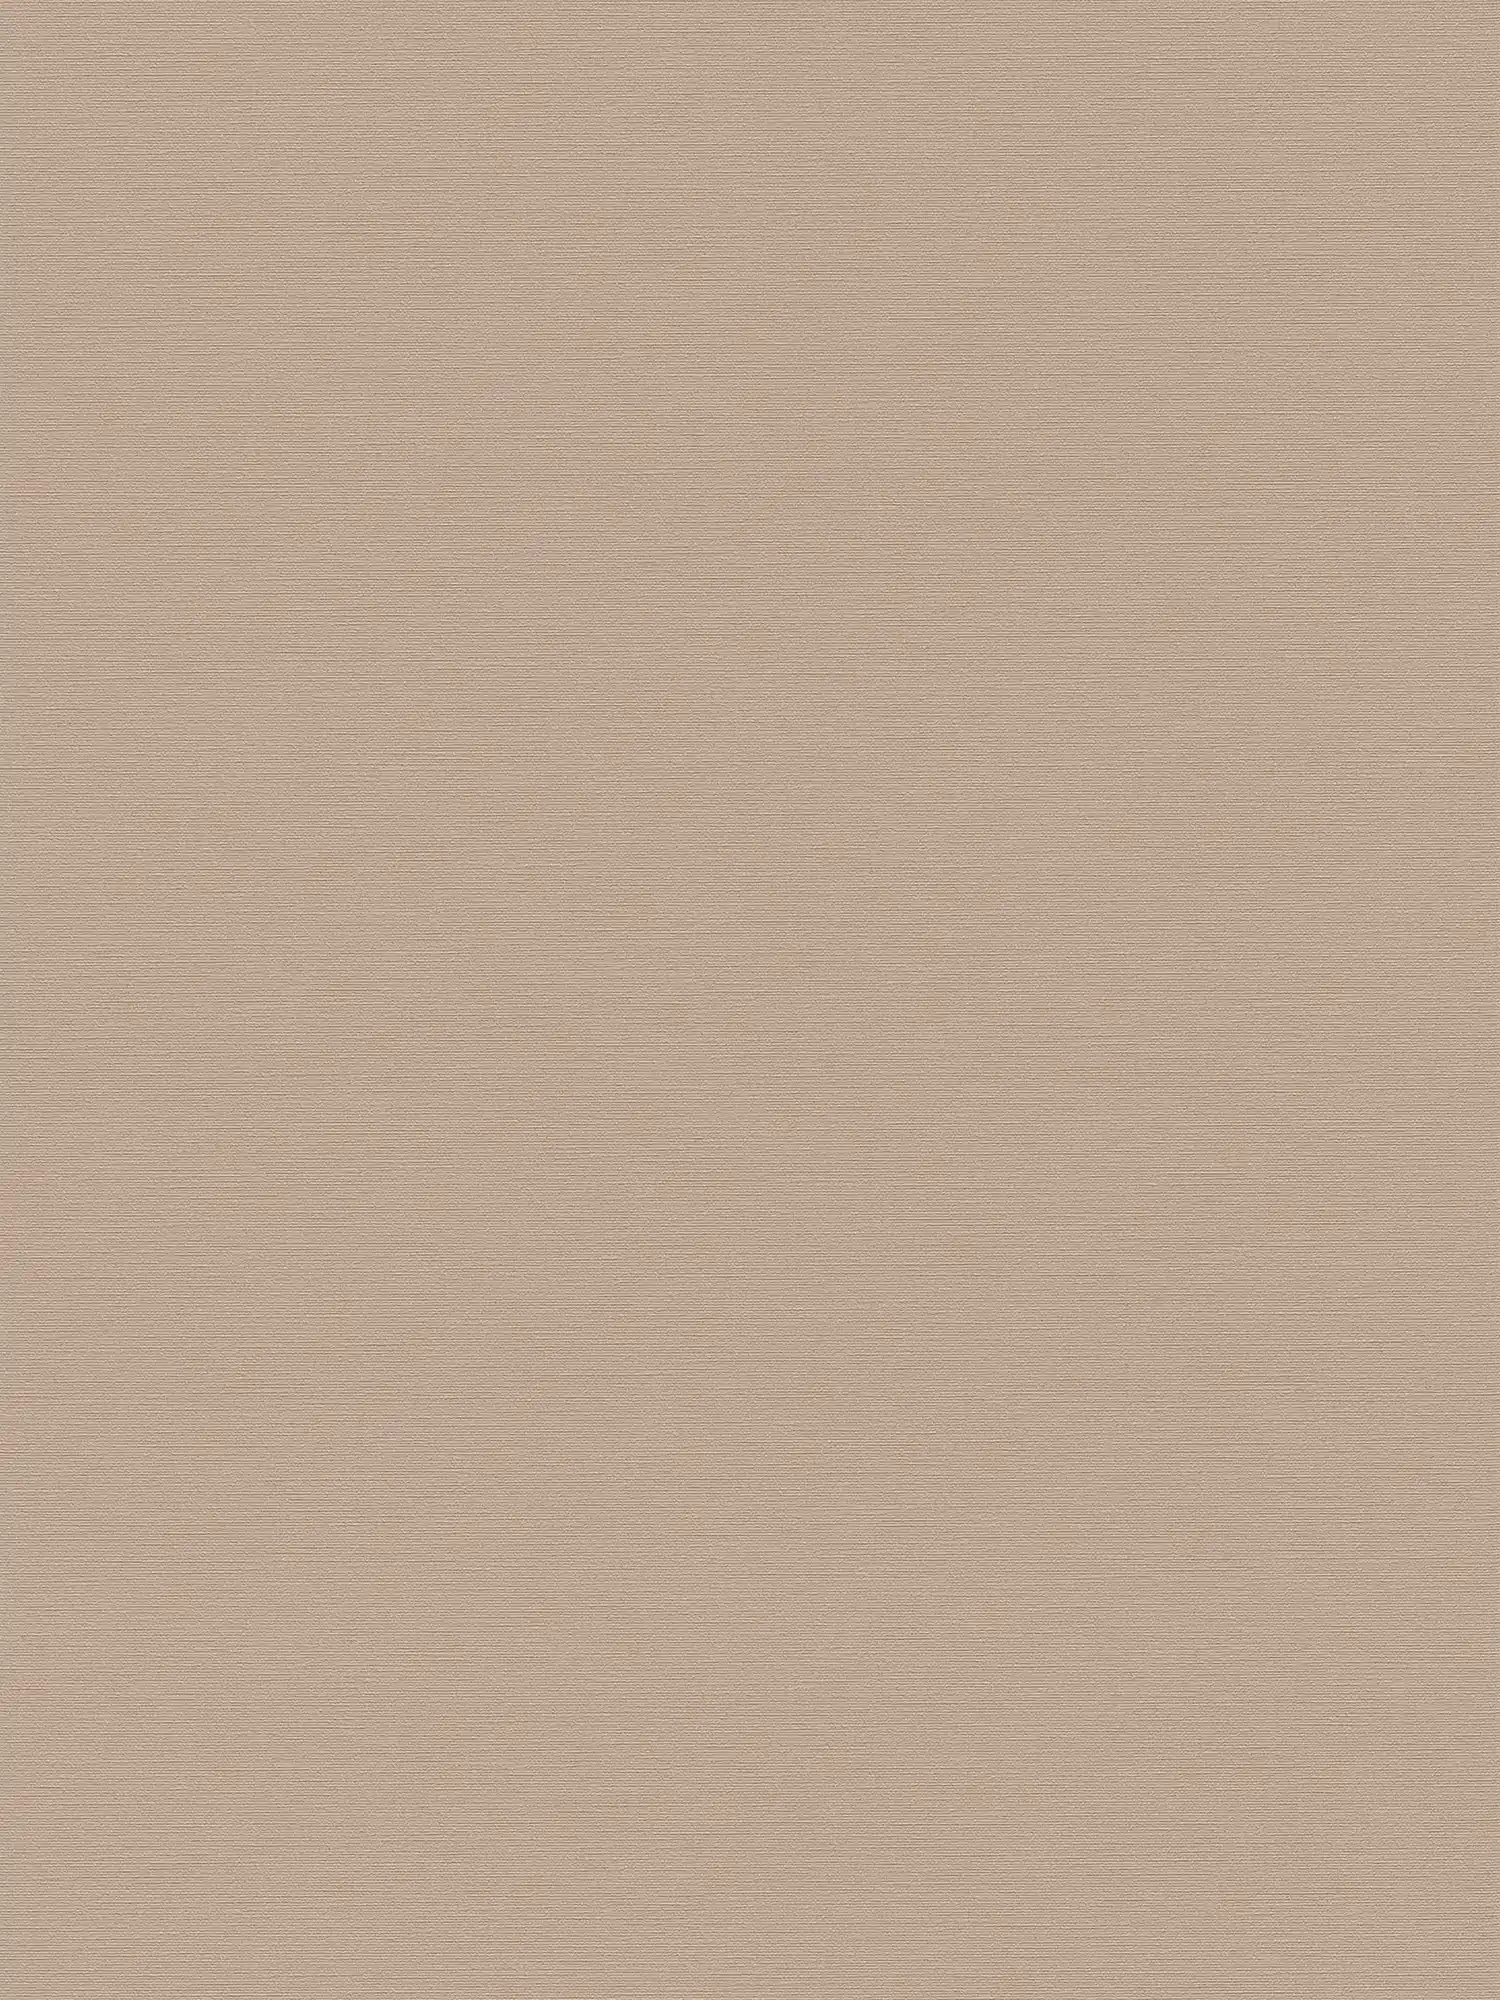         Discreet plain wallpaper in linen look - beige
    